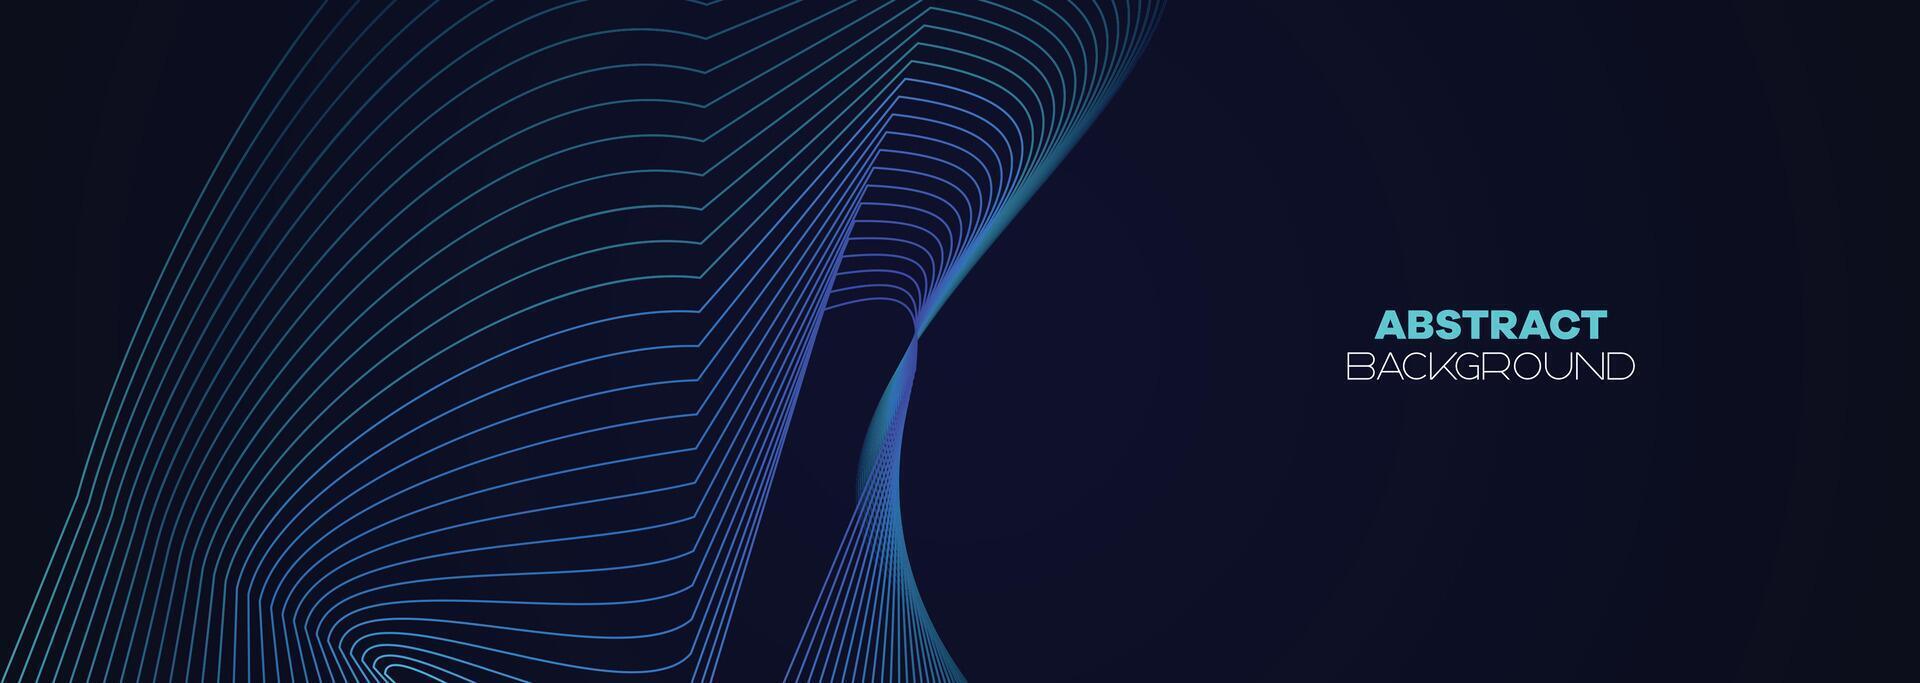 dunkel Blau, Grün abstrakt Banner Hintergrund mit glühend geometrisch Linien. Marine Blau Gradient glänzend Linien Muster futuristisch Technologie Netz Hintergrund zum Wissenschaft, Abdeckung, Webseite, Header, Broschüre vektor